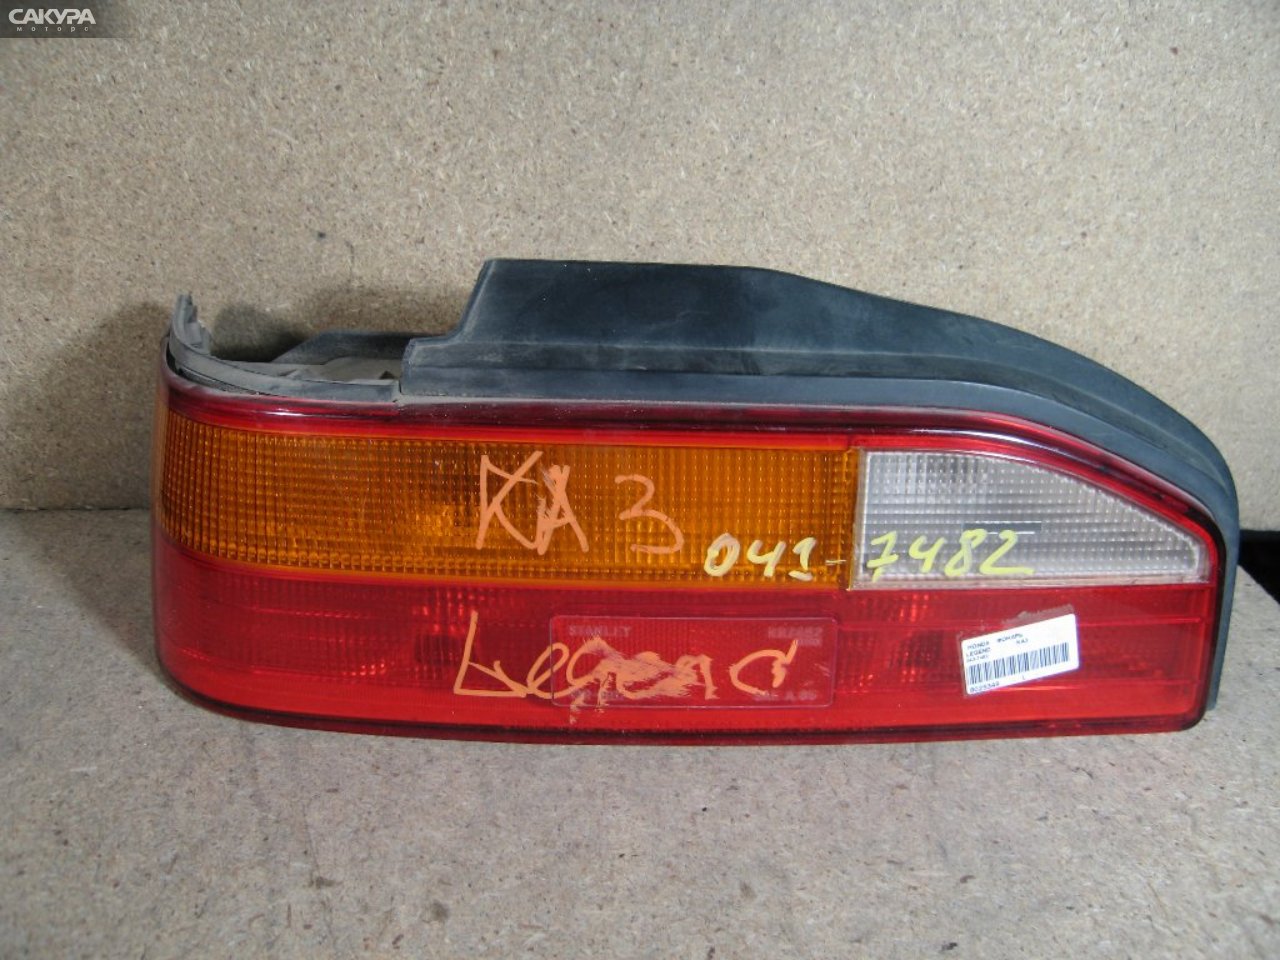 Фонарь стоп-сигнала левый Honda Legend KA3 043-7482: купить в Сакура Абакан.